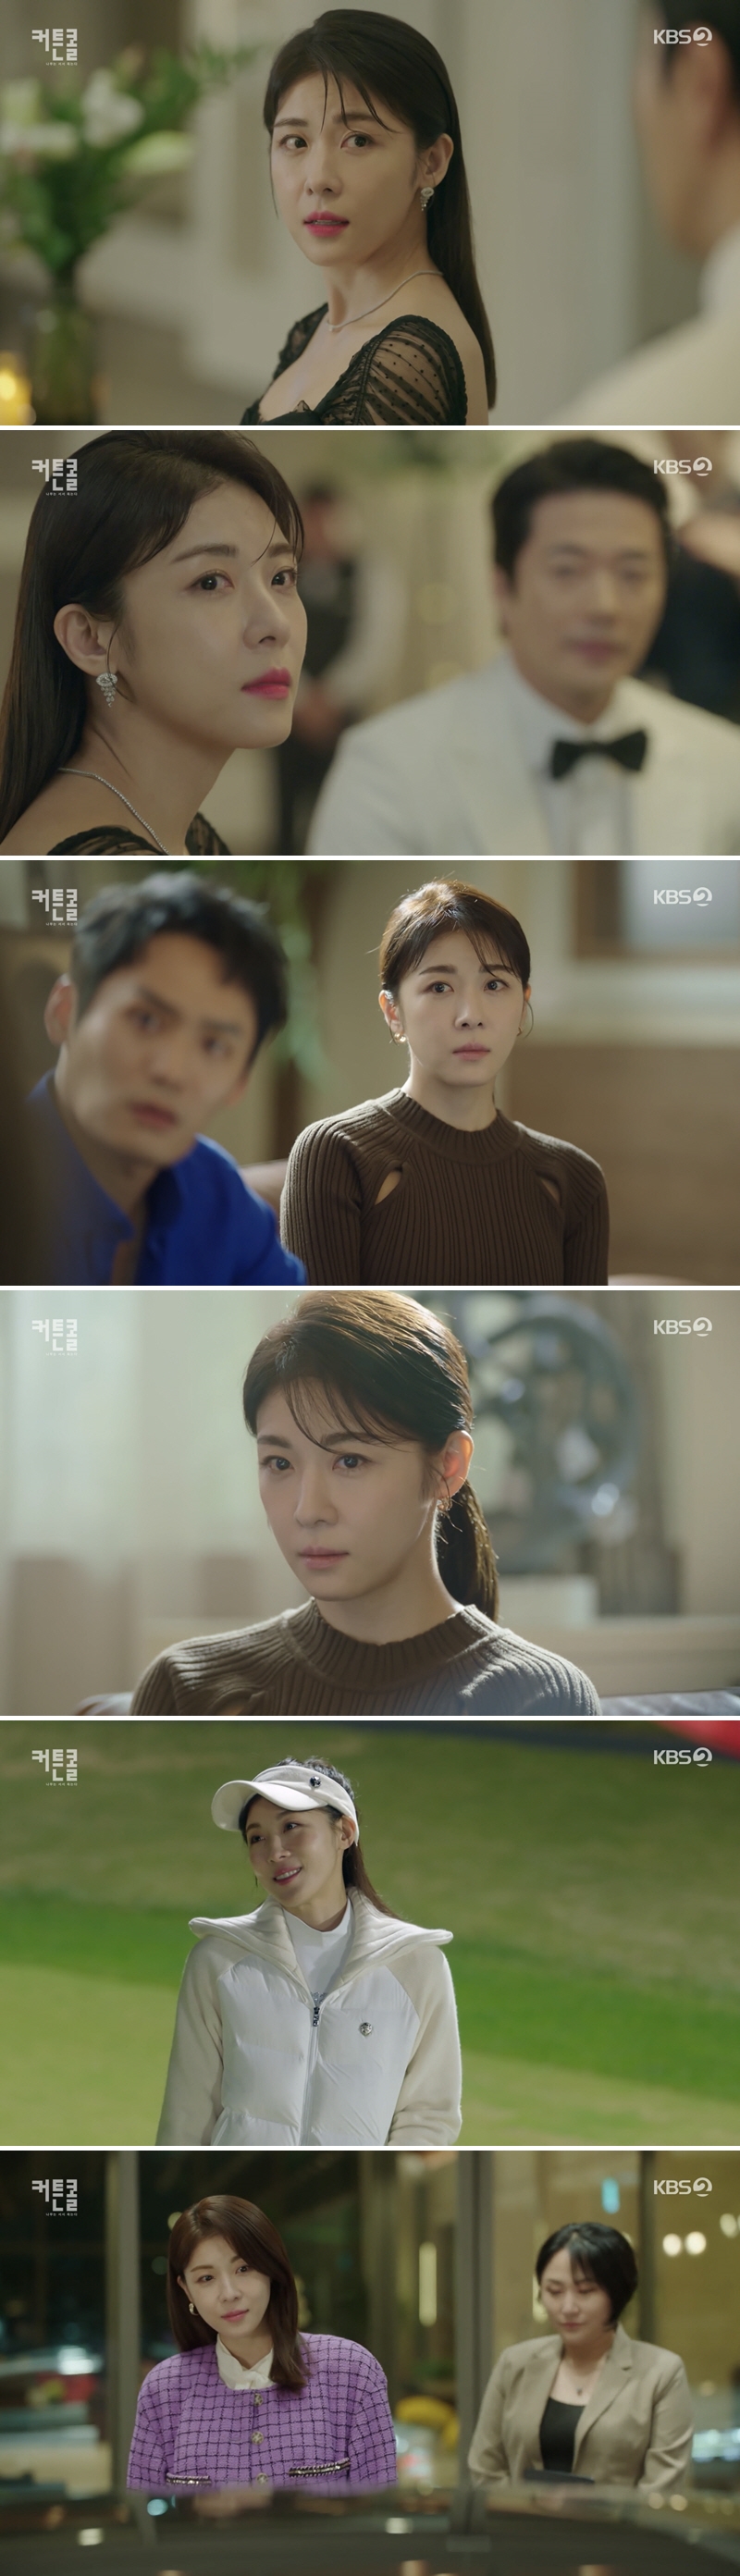 ▲ KBS2 월화드라마 '커튼콜' 배우 하지원. 제공| KBS